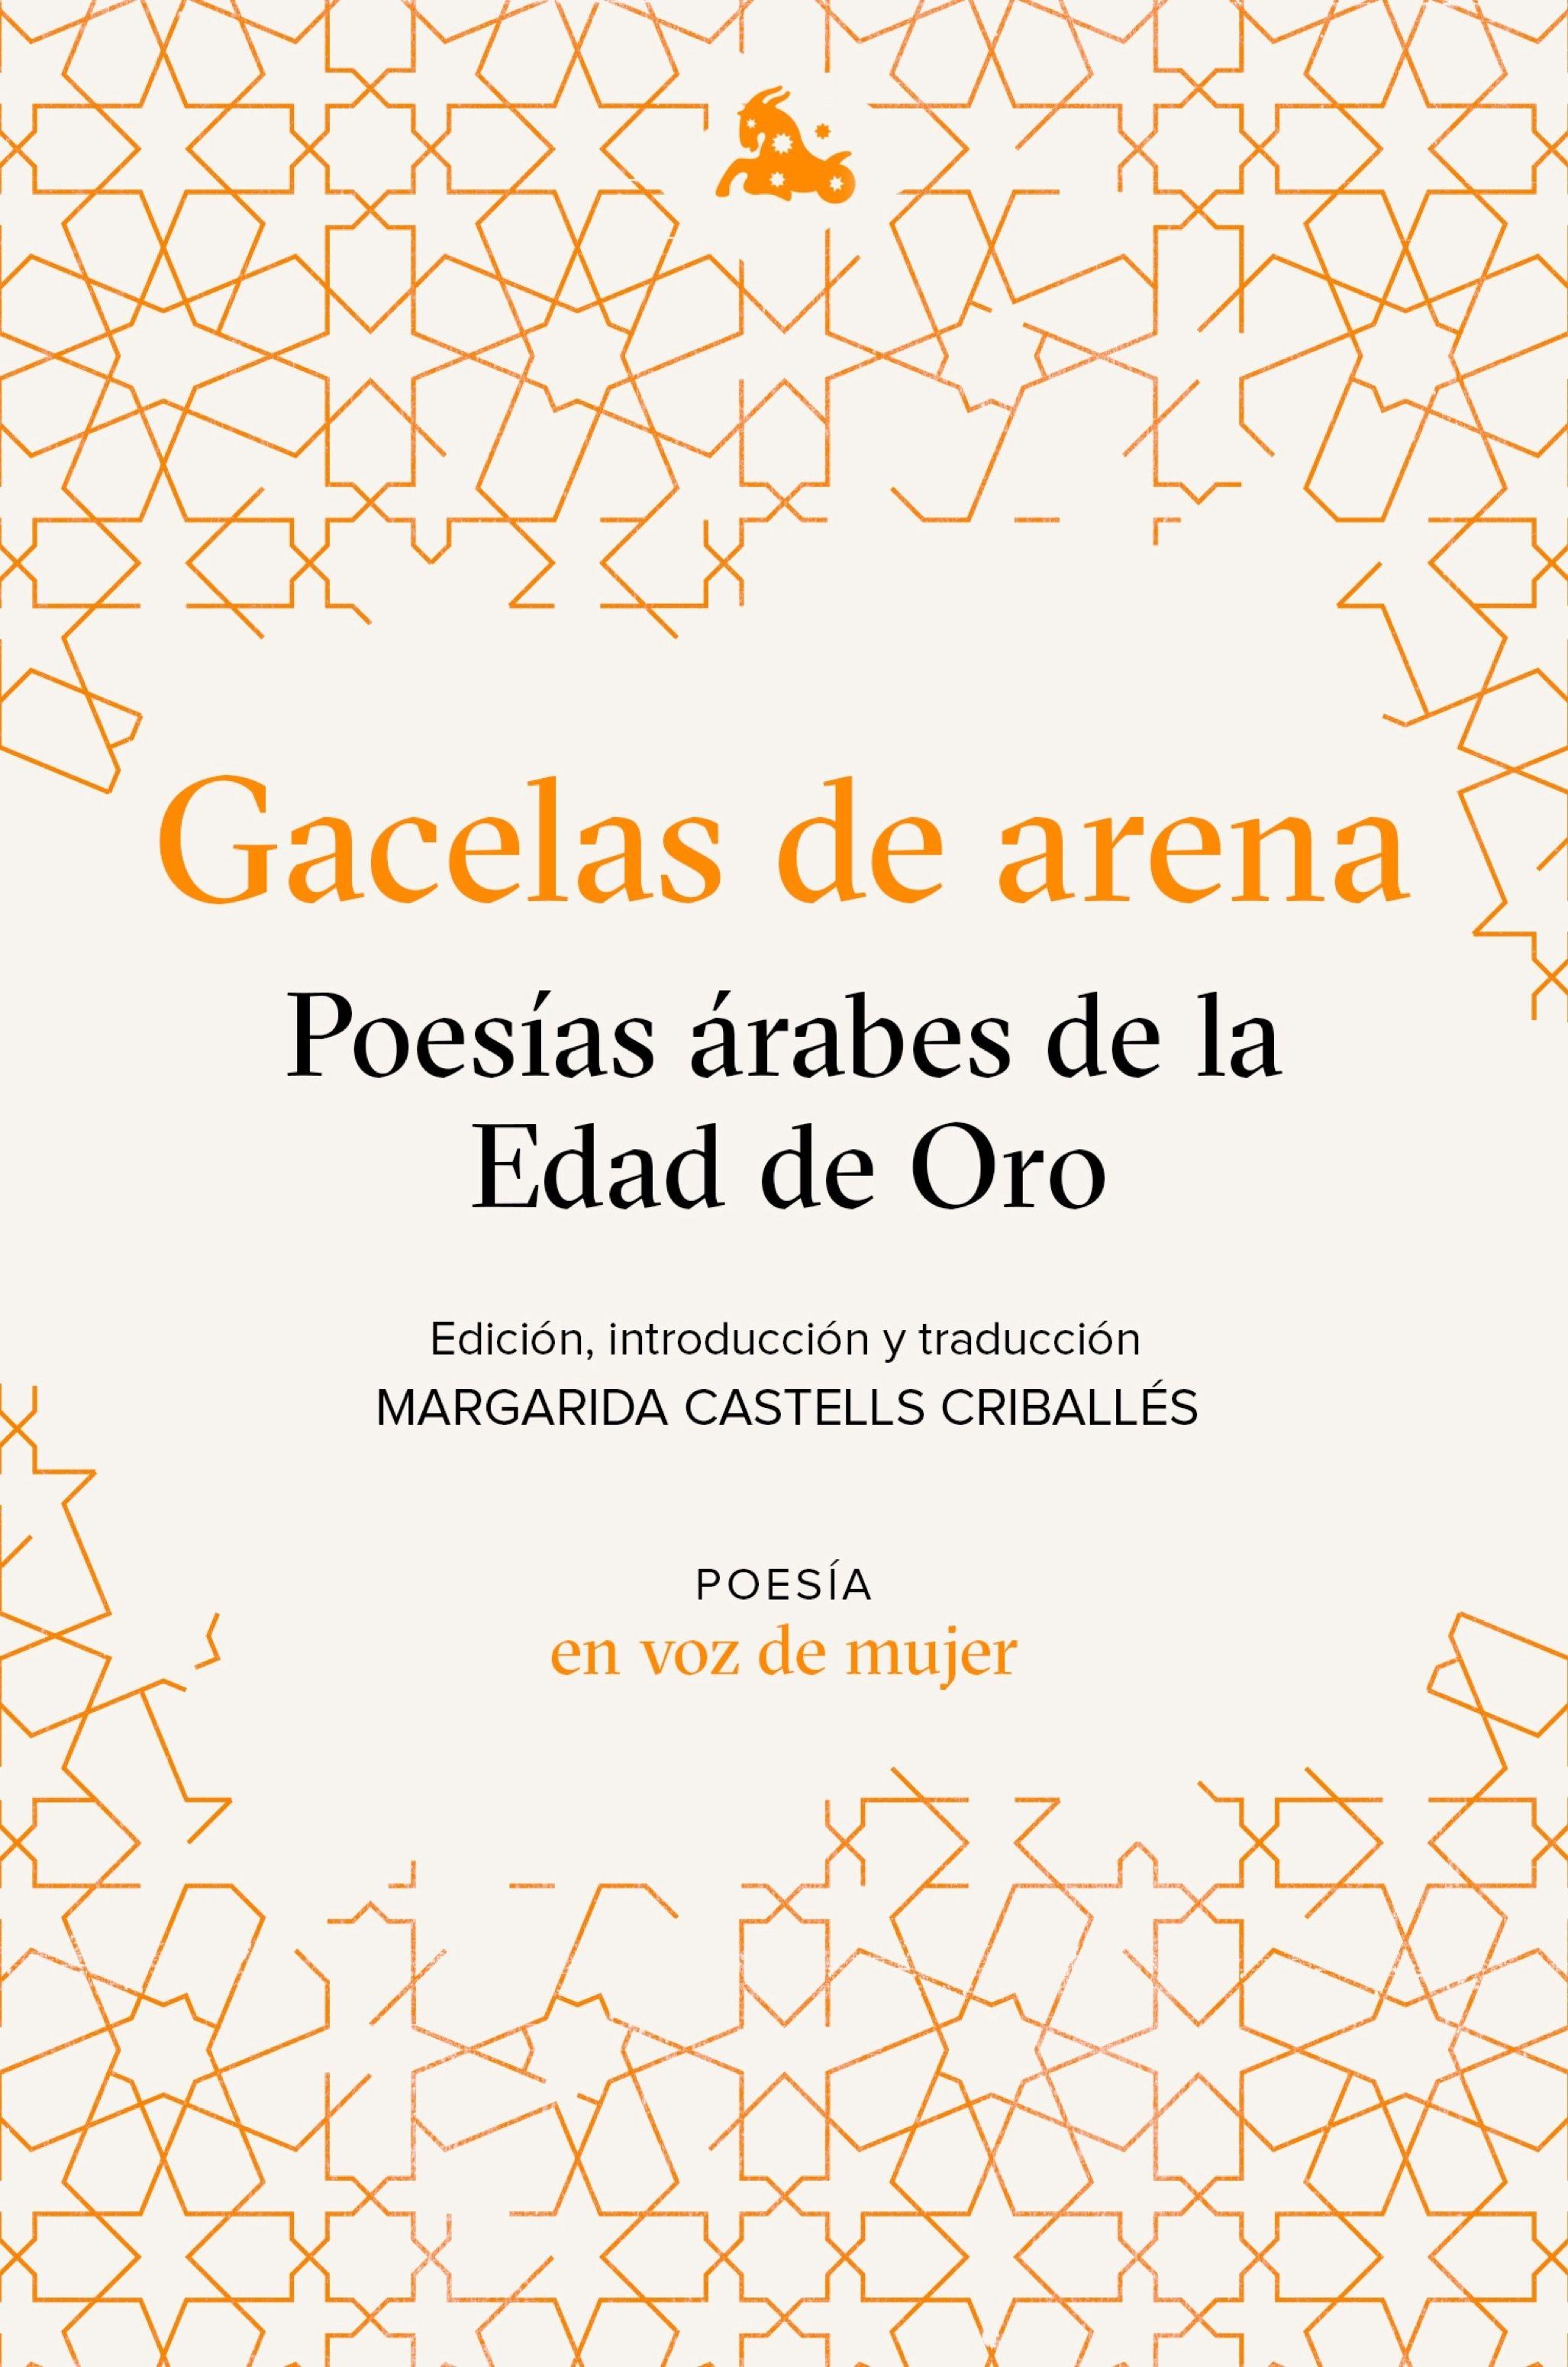 Gacelas de arena: Poesías árabes de la Edad de Oro "Edición, introducción y traducción a cargo de Margarida Castells". 